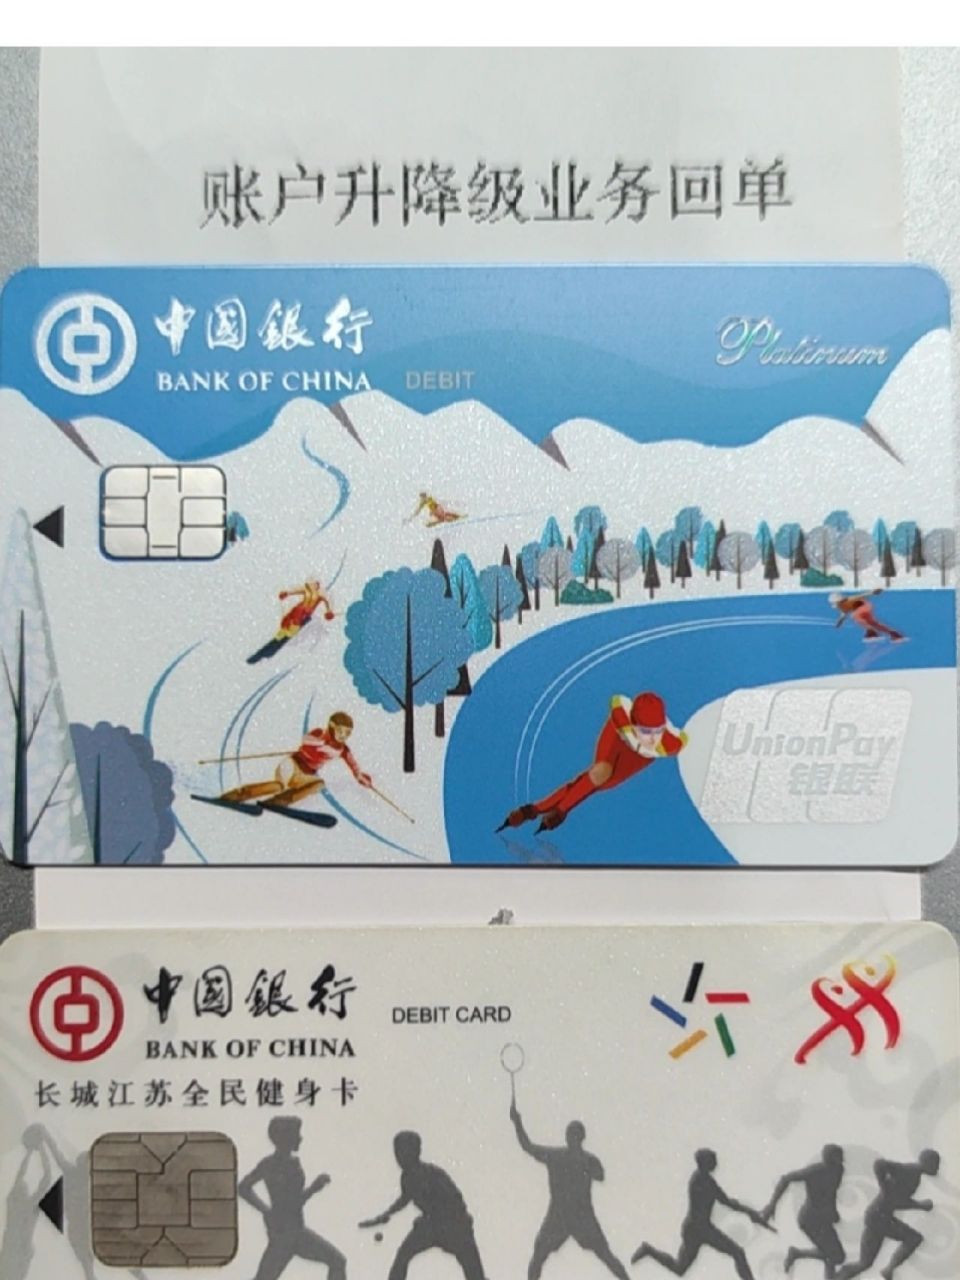 中行冰雪借记卡,你值得拥有 感谢中国银行,解决了跨境支付的这个刚需